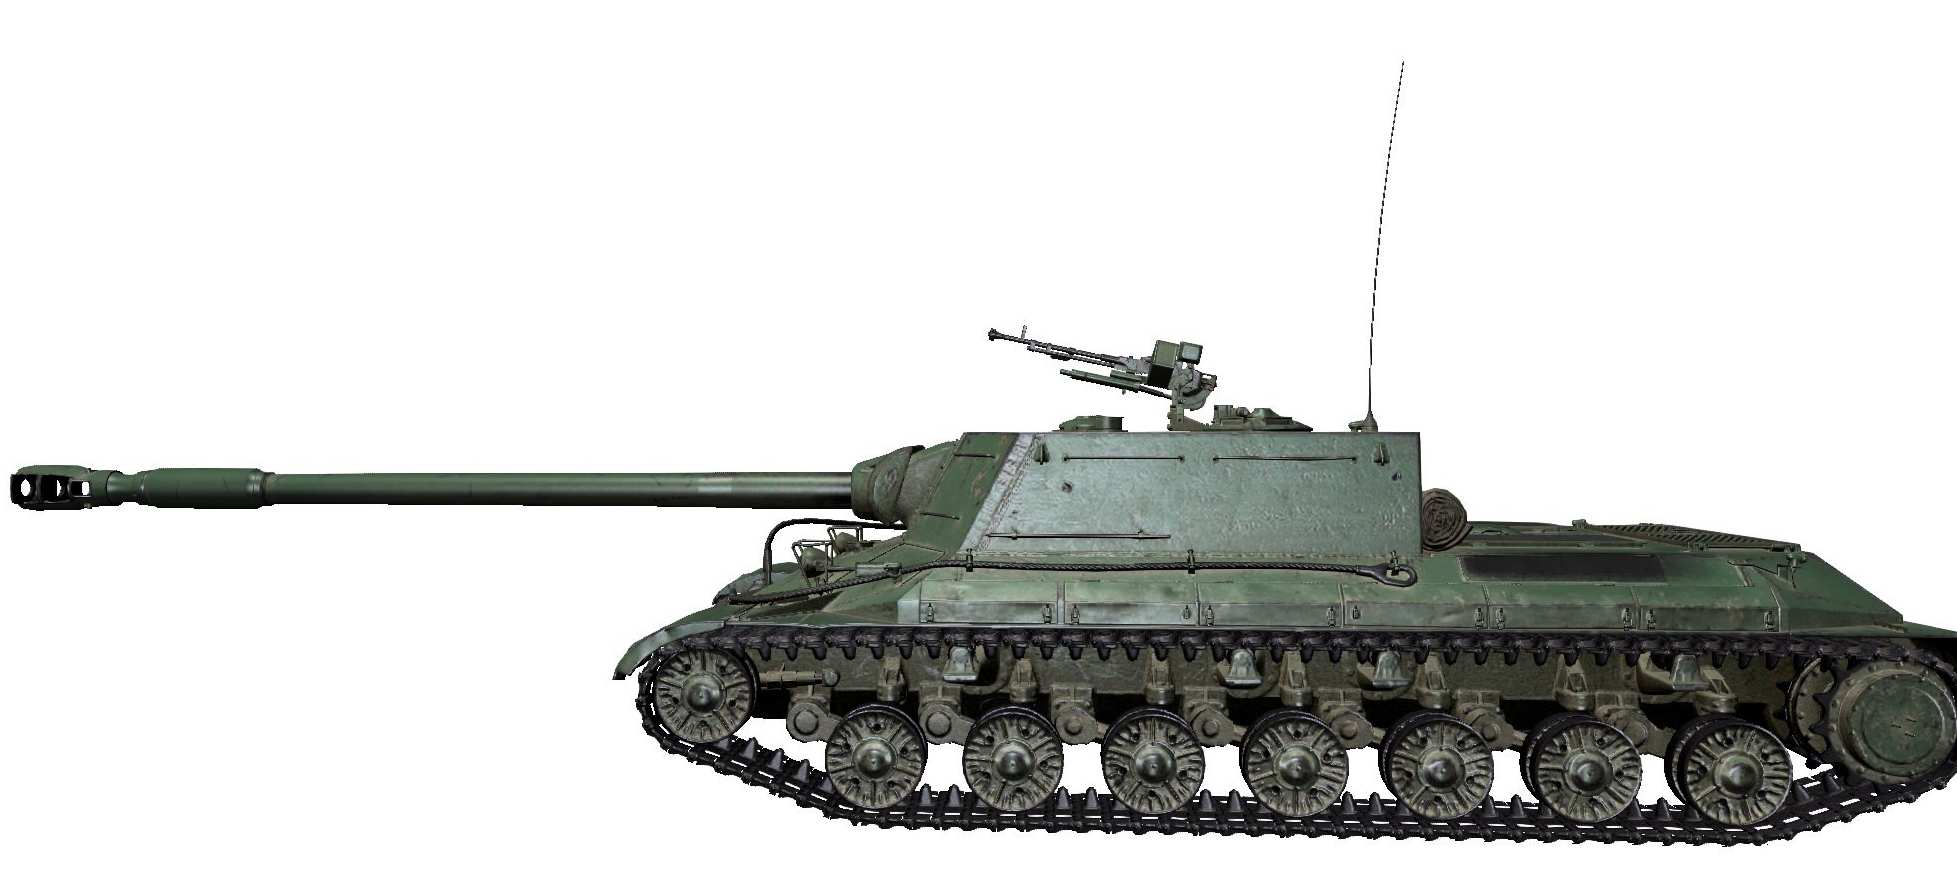 Ис 0 5. Танк WZ-111. Танк ИС 44 сбоку. ИС 4 вид сбоку. Танки из ворлд оф танк сбоку.